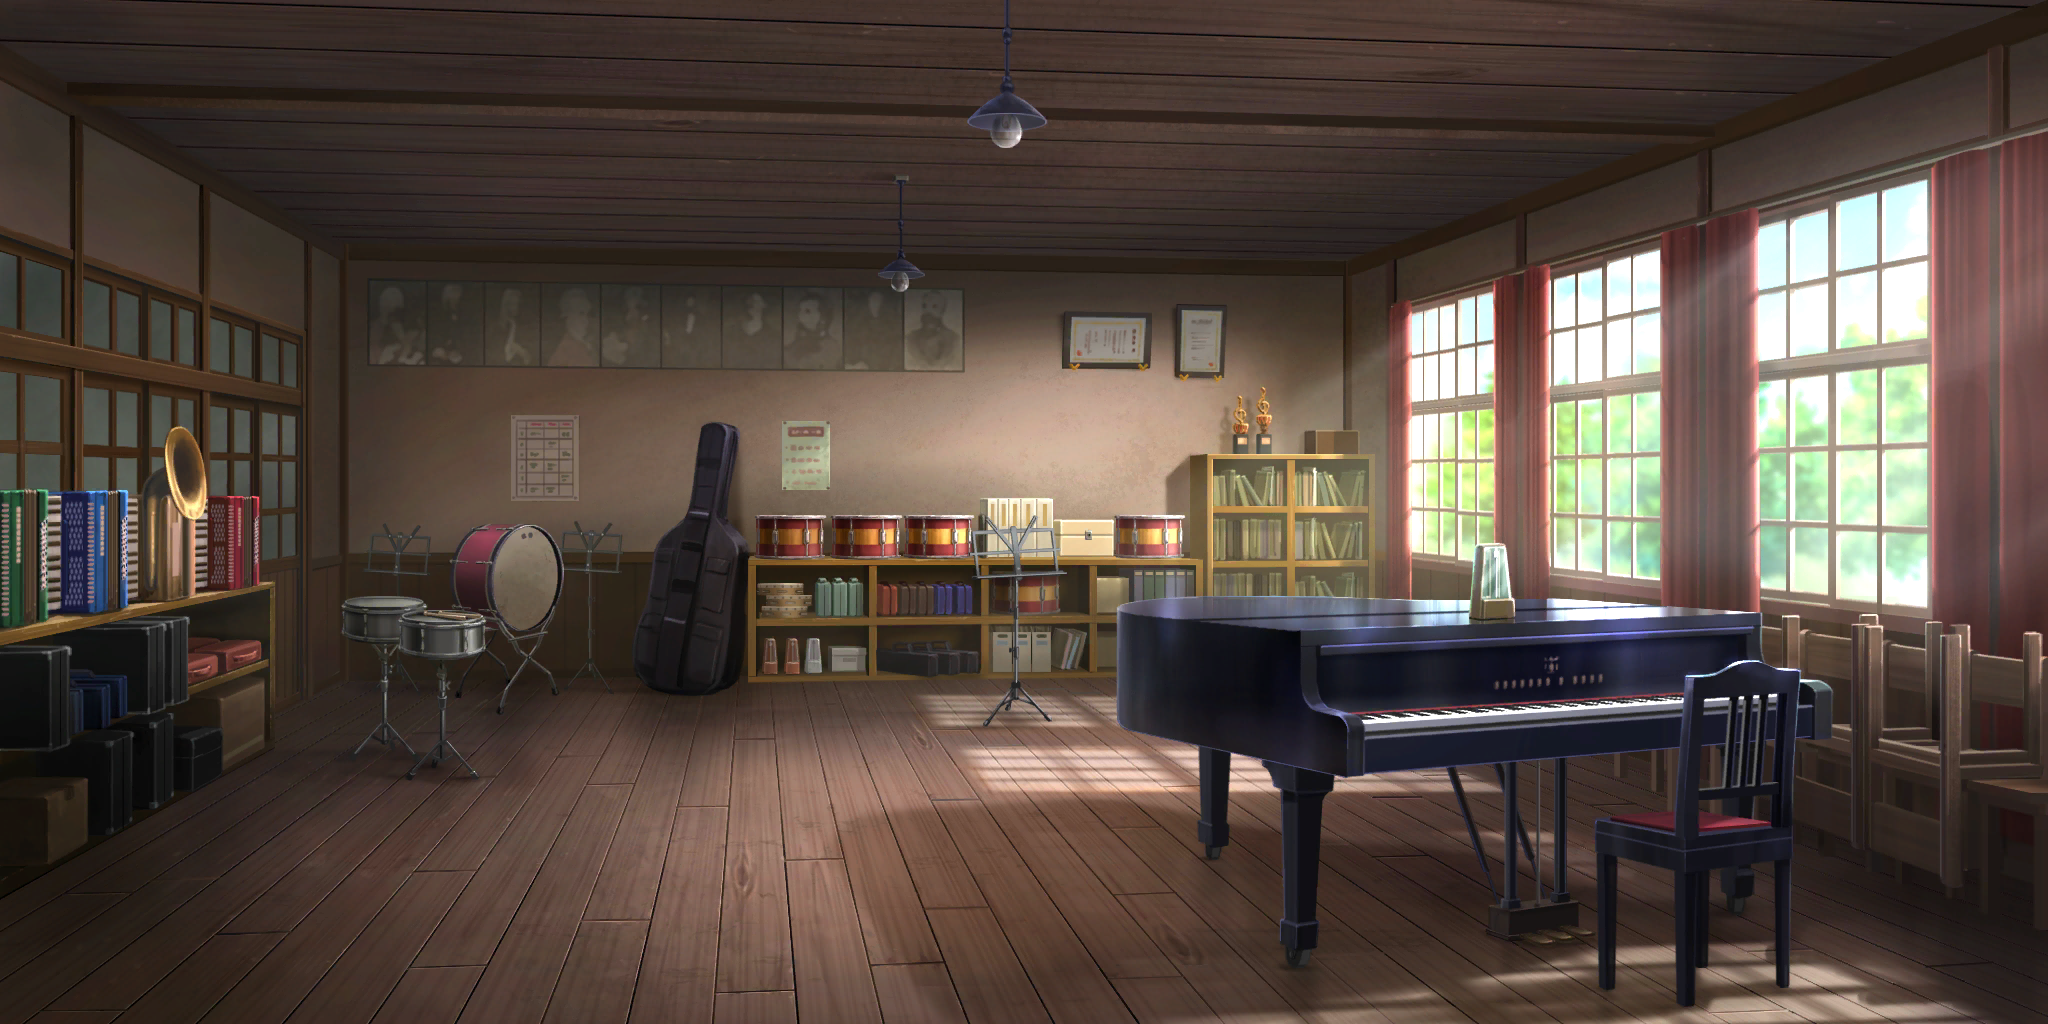 Touhou LostWord - Hakurei School Music Room